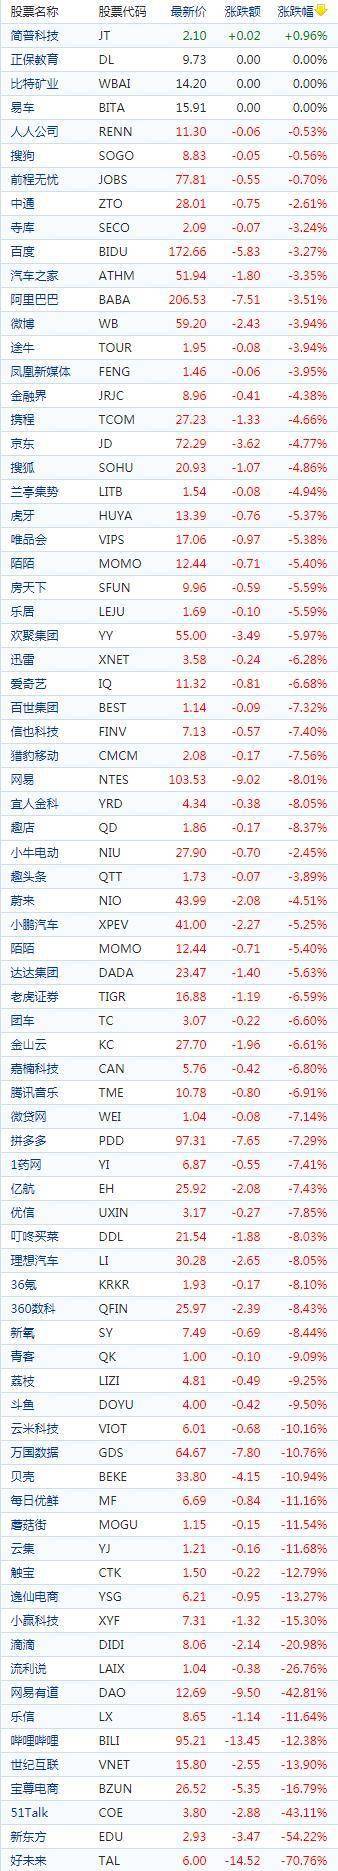 中国概念股周五收盘普遍下跌 教育股重挫新东方大跌54.2%